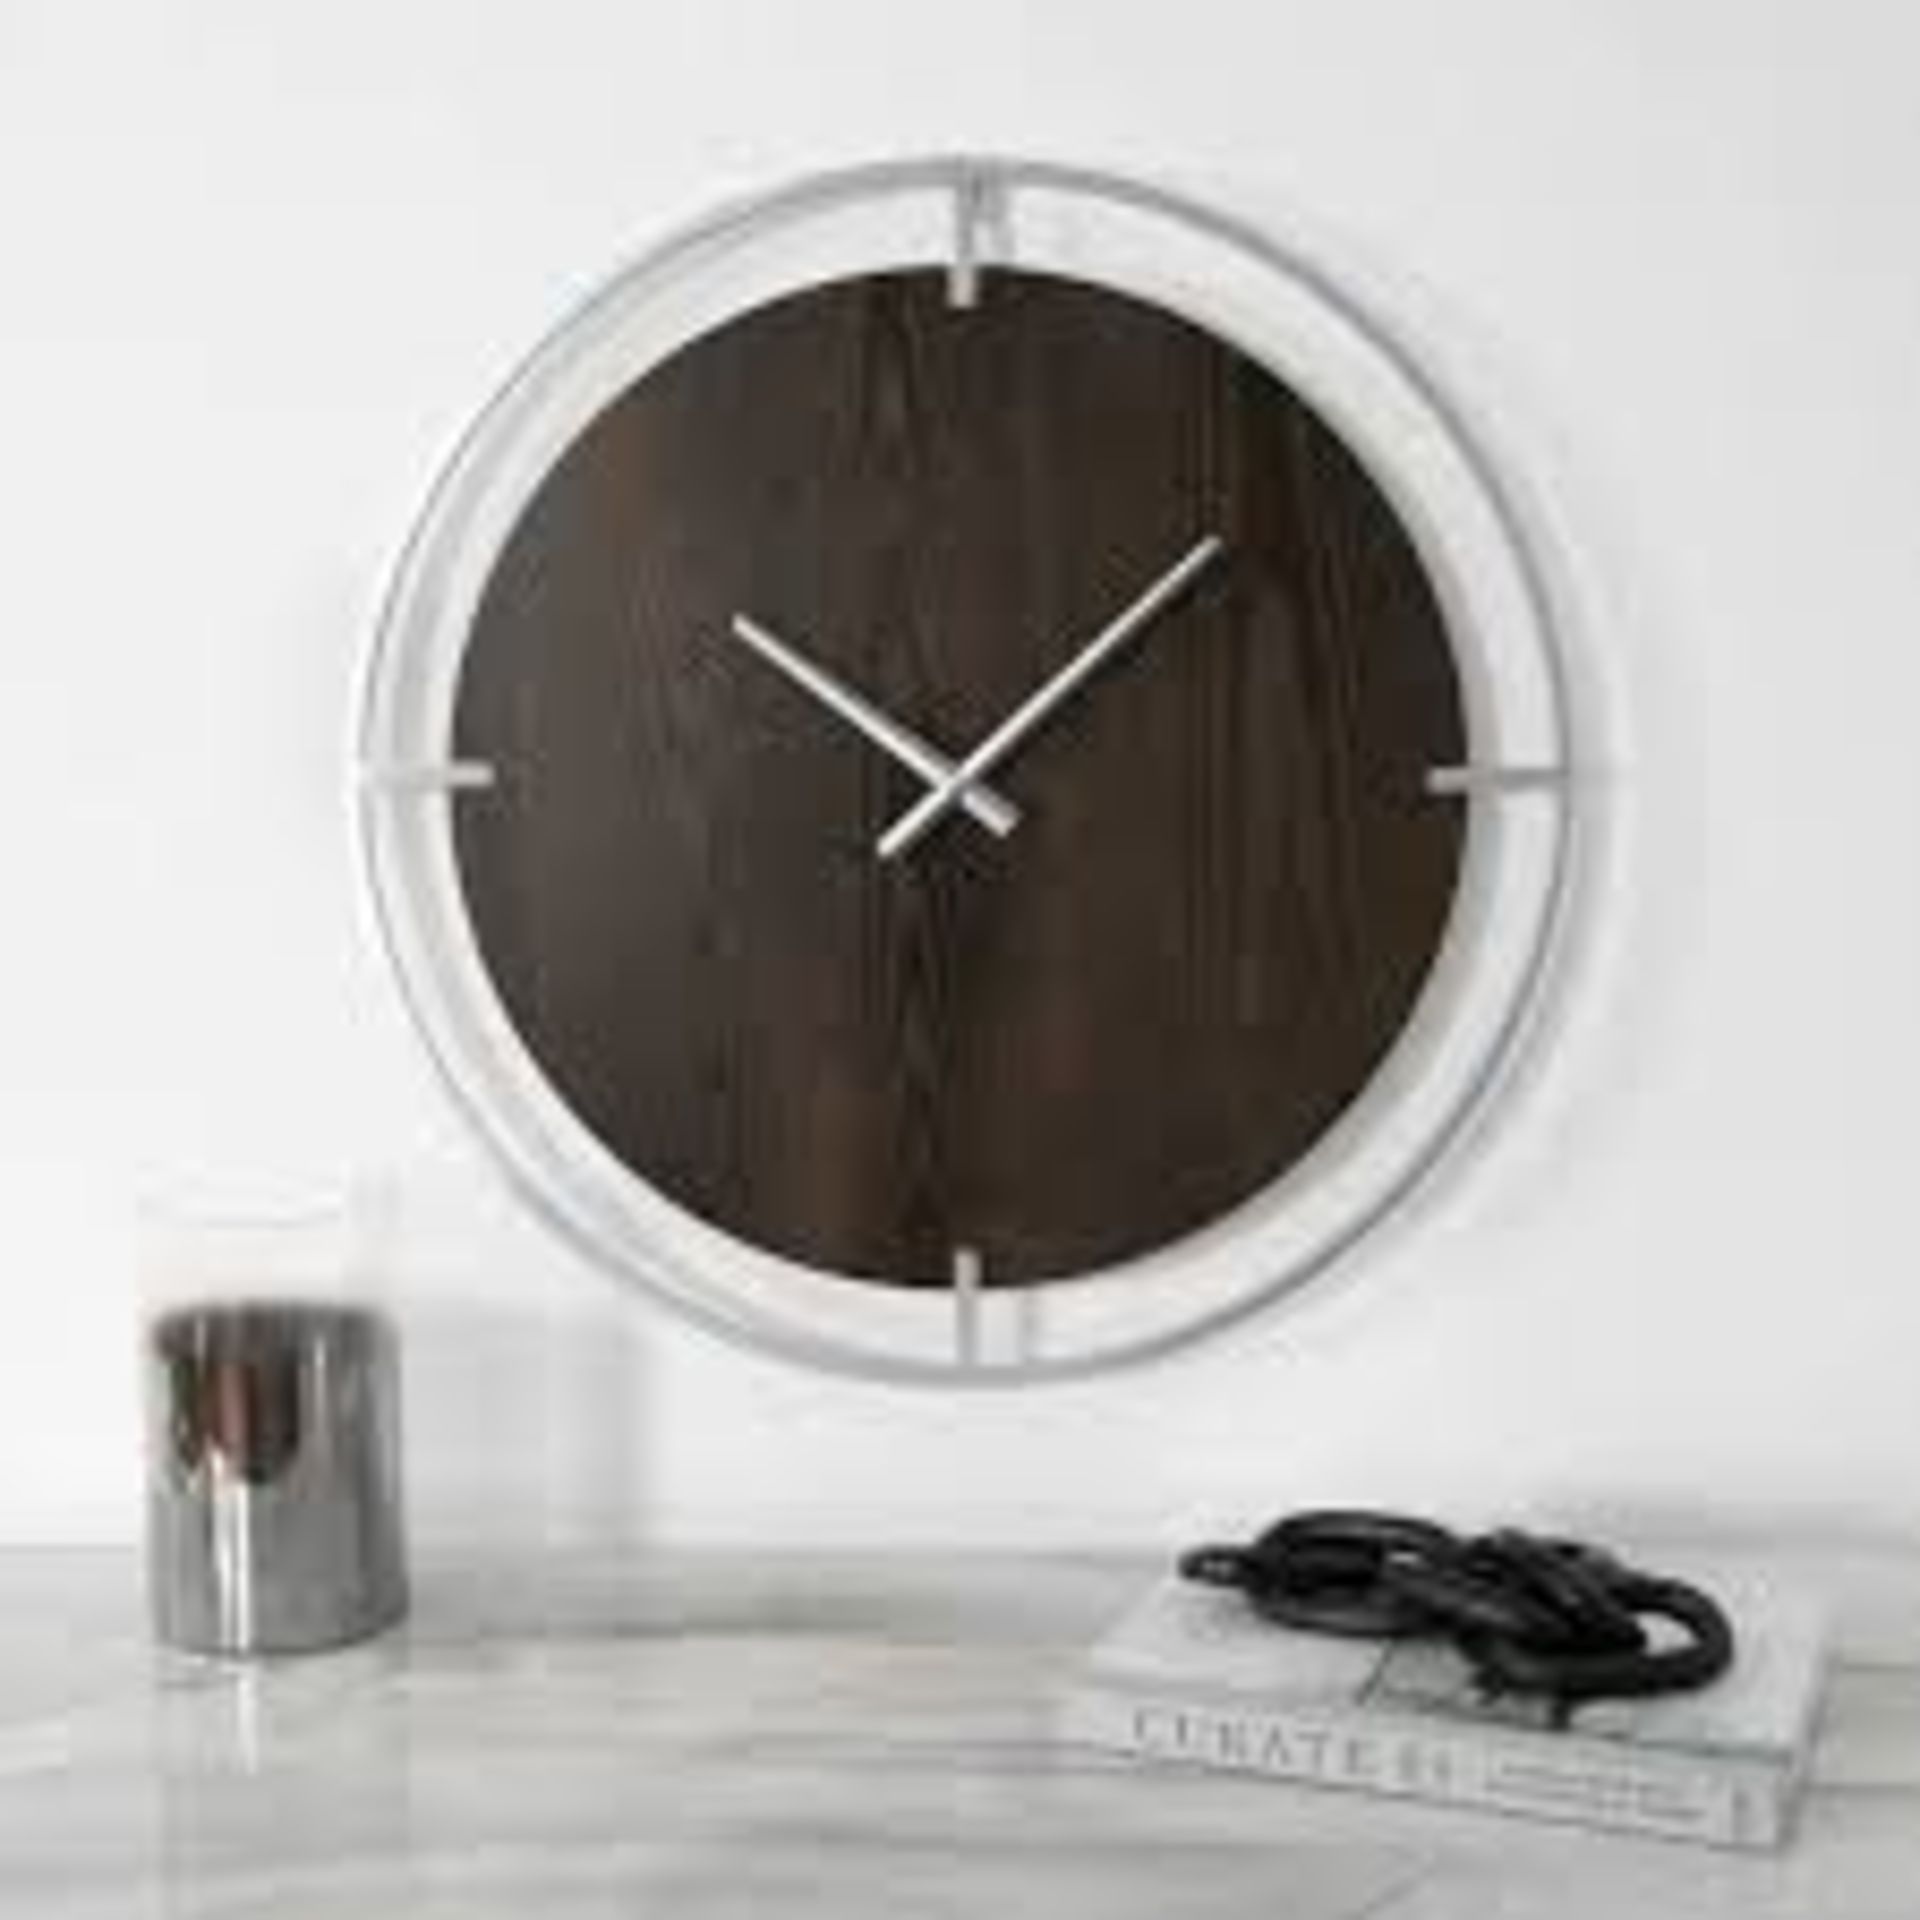 20 X BRAND NEW Minimalist Wood & Silver Wall Clock RRP £100 EACH